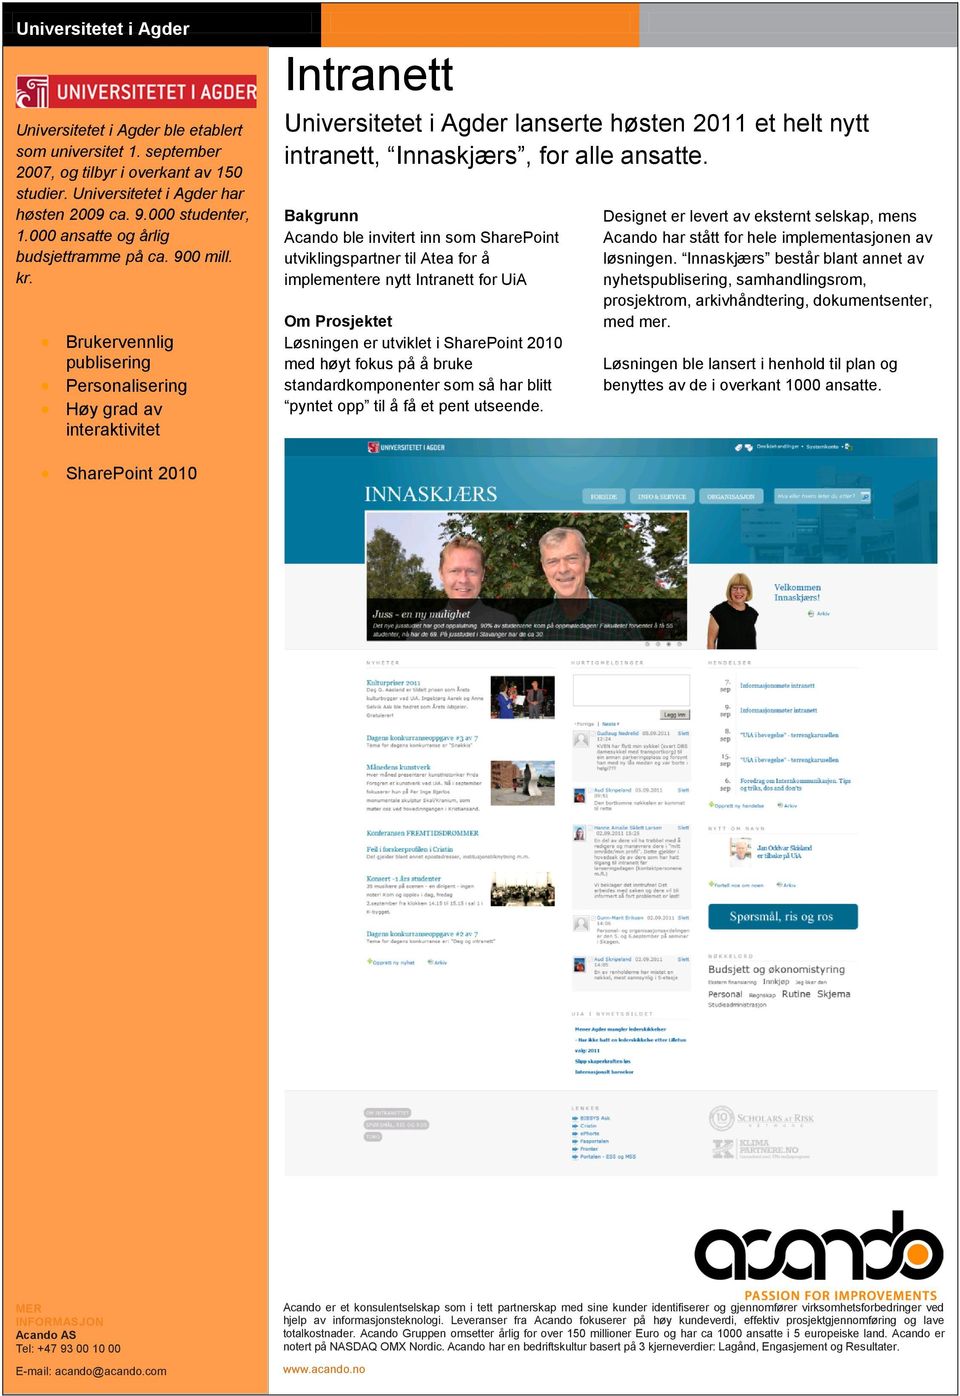 Brukervennlig publisering Personalisering Høy grad av interaktivitet Intranett Universitetet i Agder lanserte høsten 2011 et helt nytt intranett, Innaskjærs, for alle ansatte.